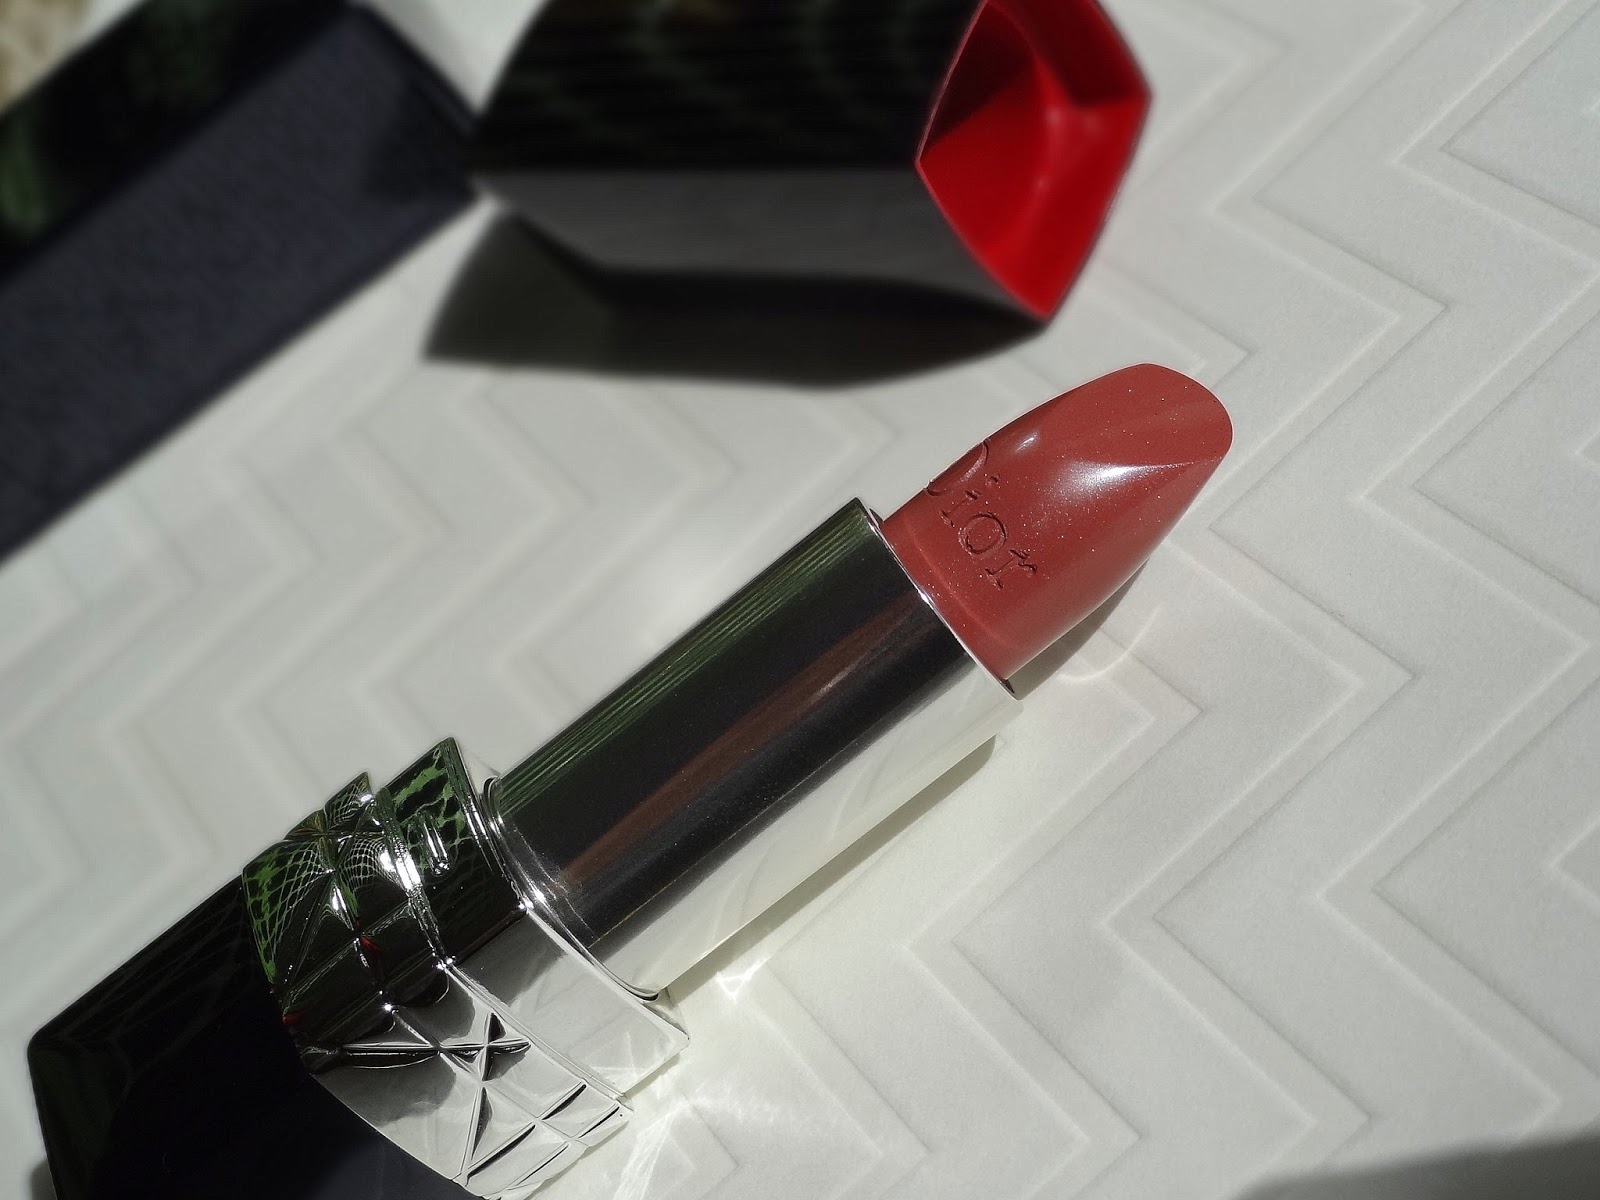 dior promenade lipstick